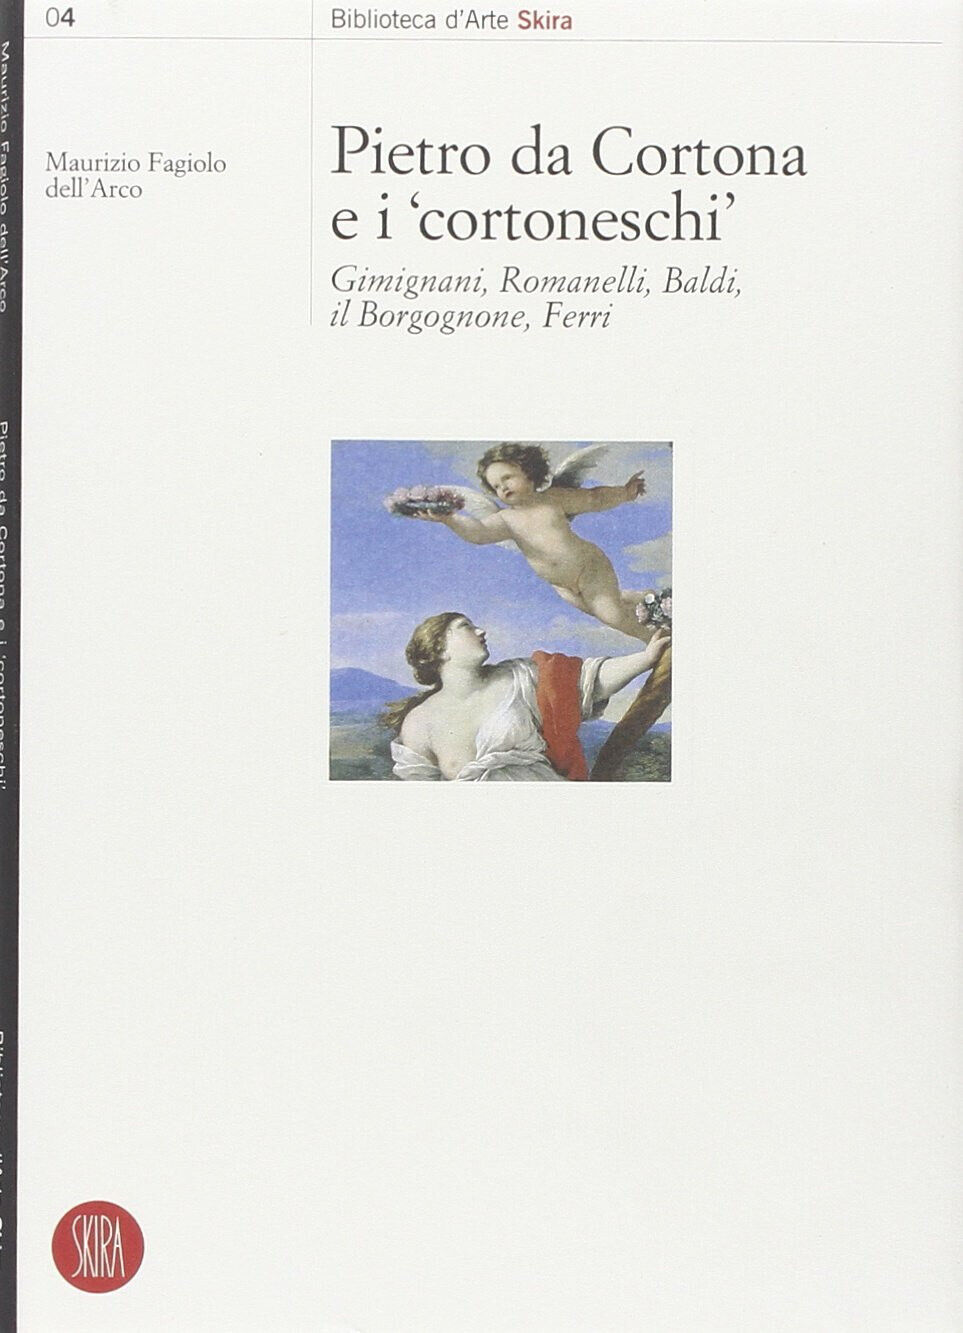 Pietro da Cortona e i Cortoneschi - Maurizio Fagiolo Dell'Arco - Skira, 2002 libro usato